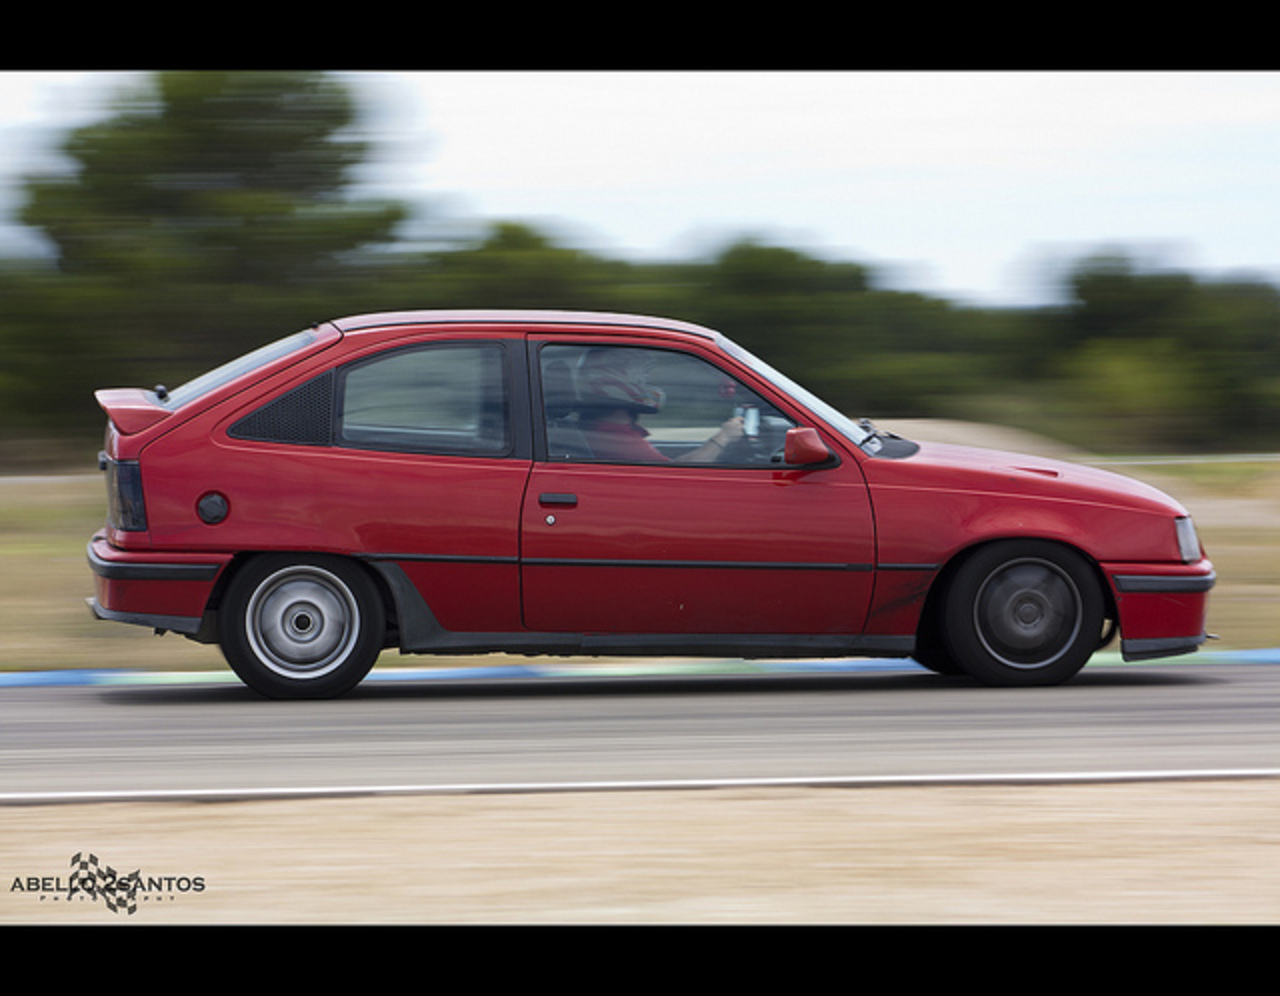 Time Attack Calafat 2011 - Opel Kadett GSI / Flickr - Partage de photos!